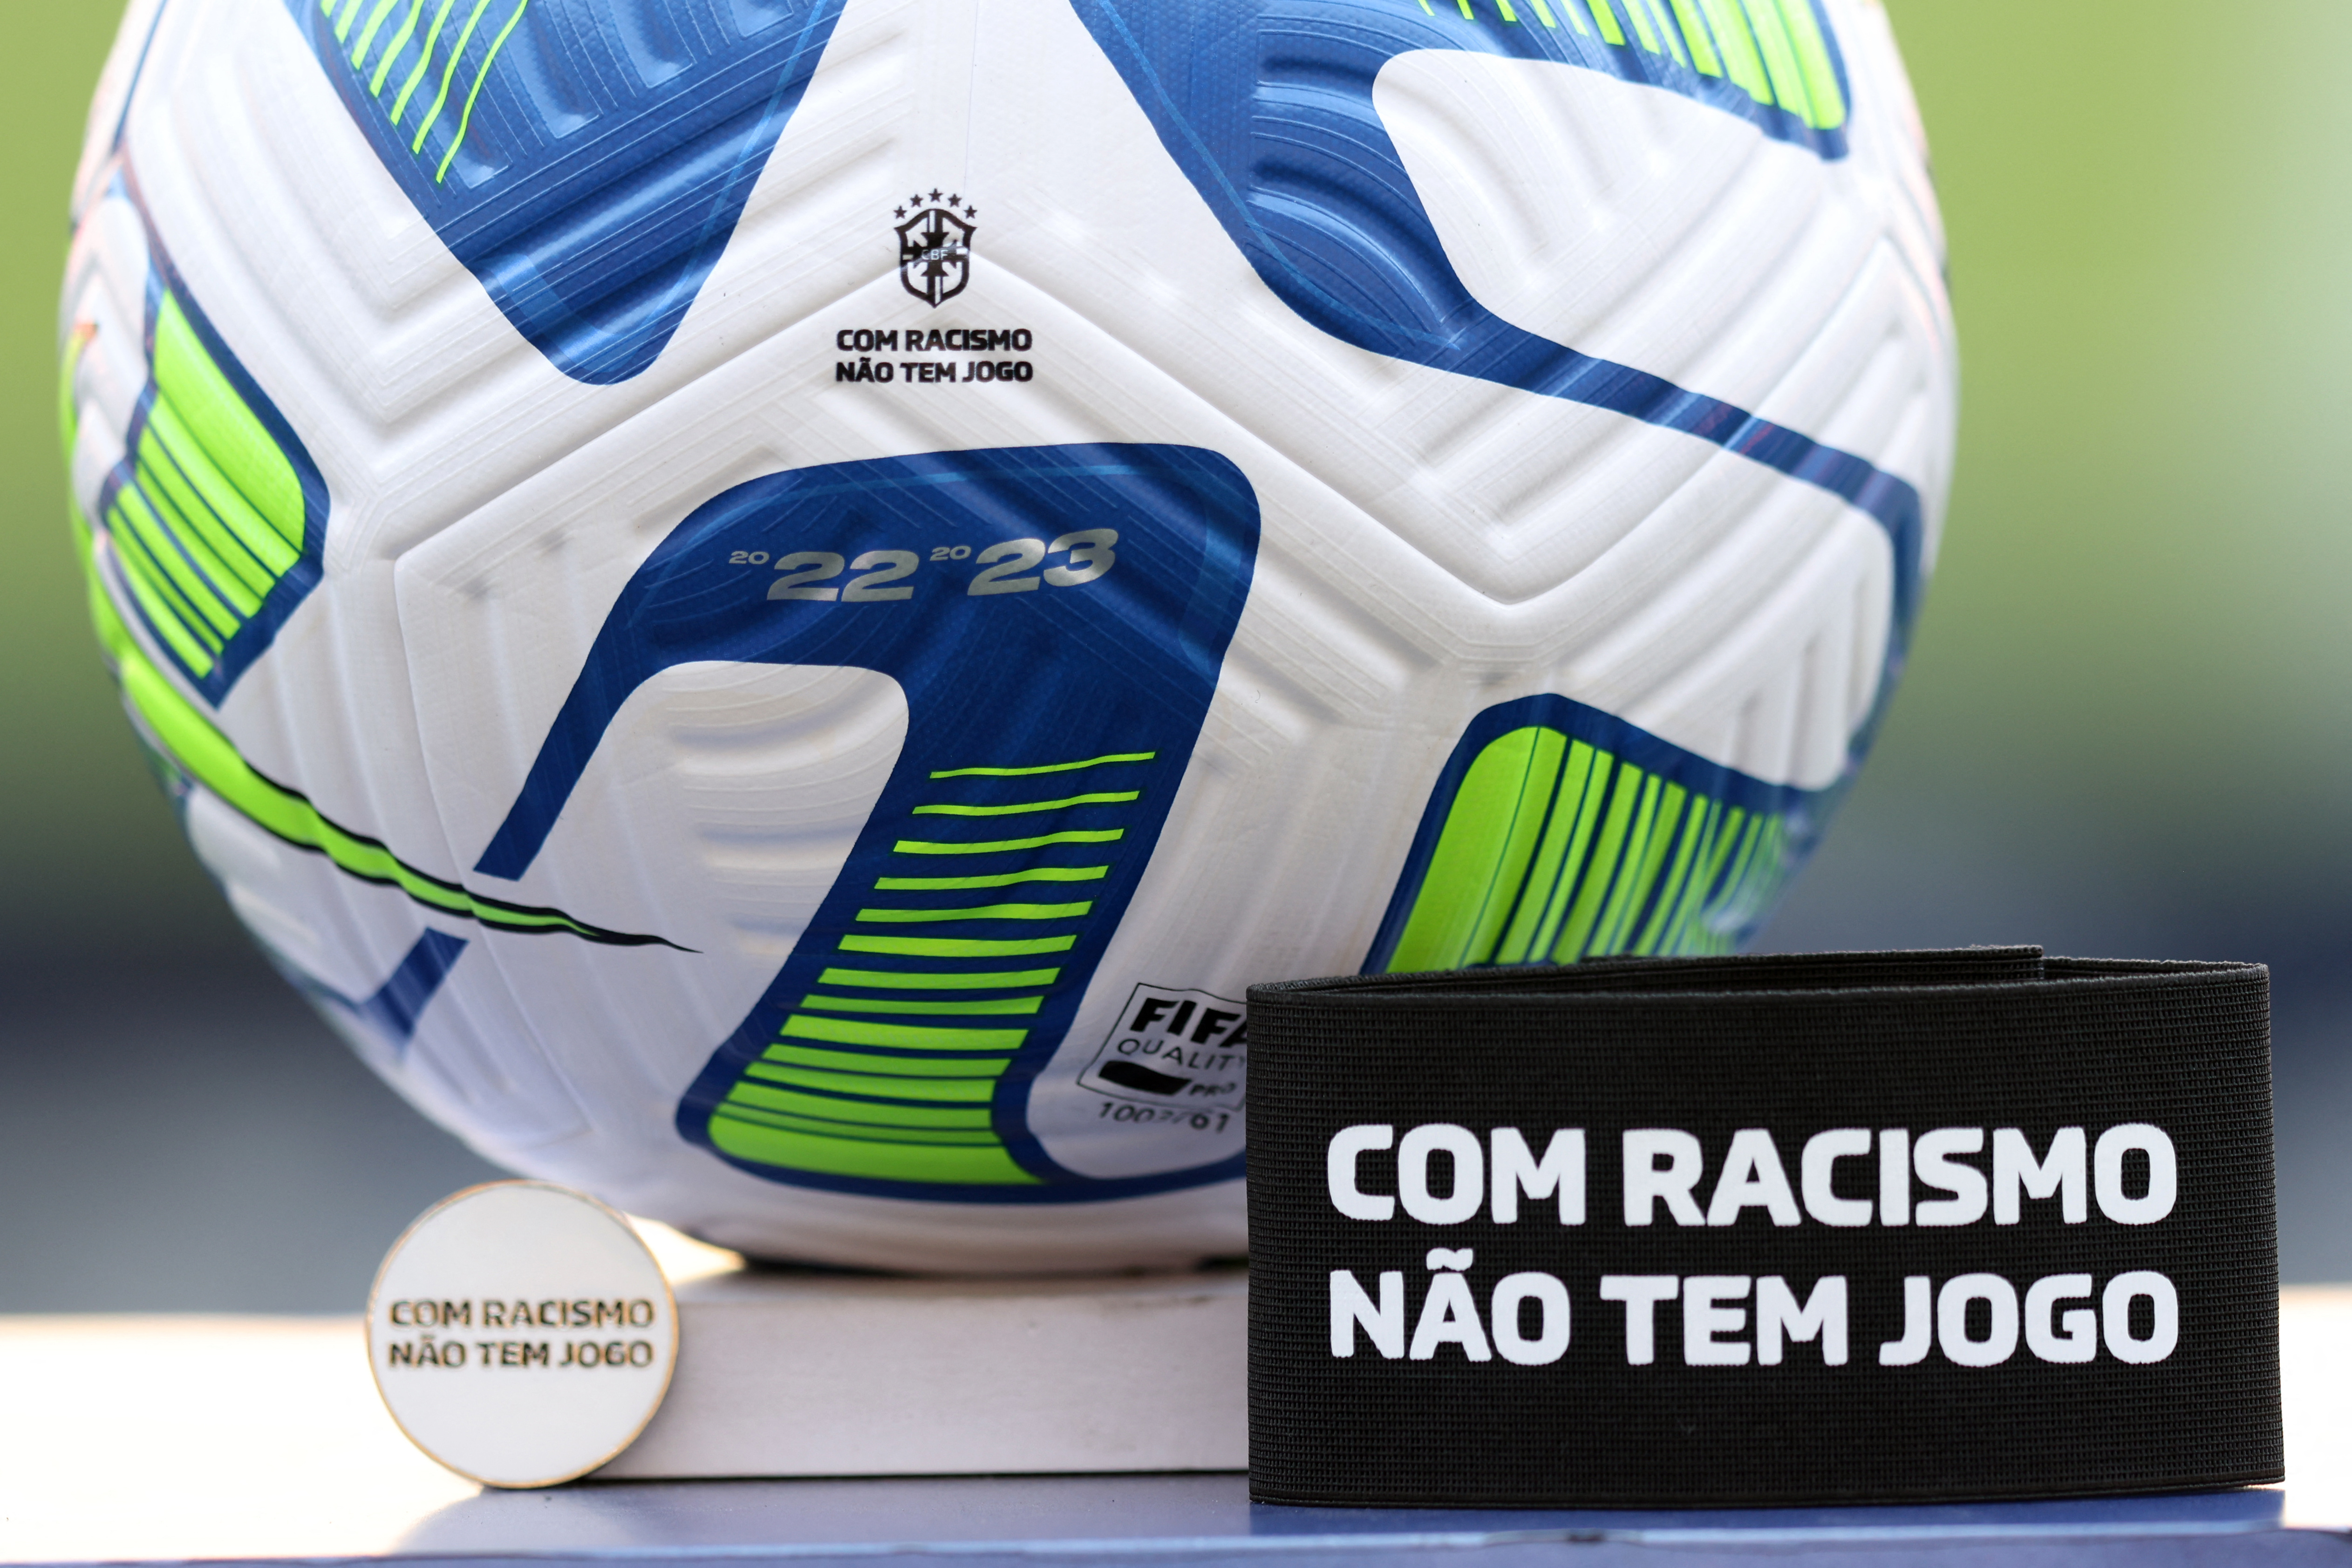 Río de Janeiro aprobó la paralización de partidos de fútbol en caso de racismo en los estadios